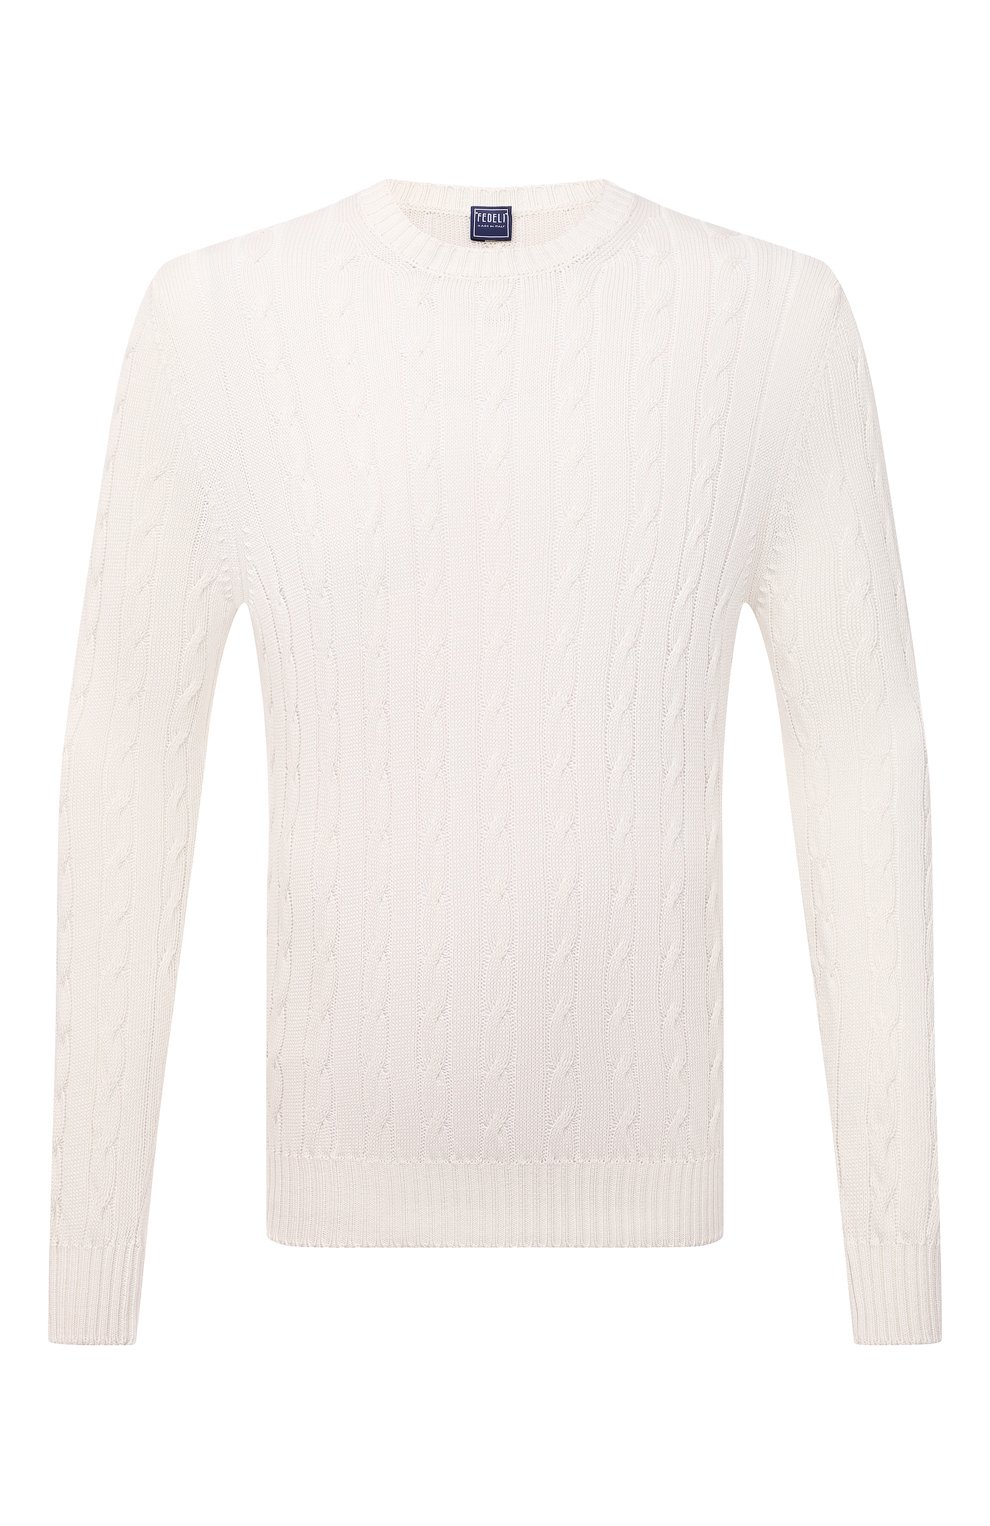 Хлопковый свитер Fedeli белого цвета